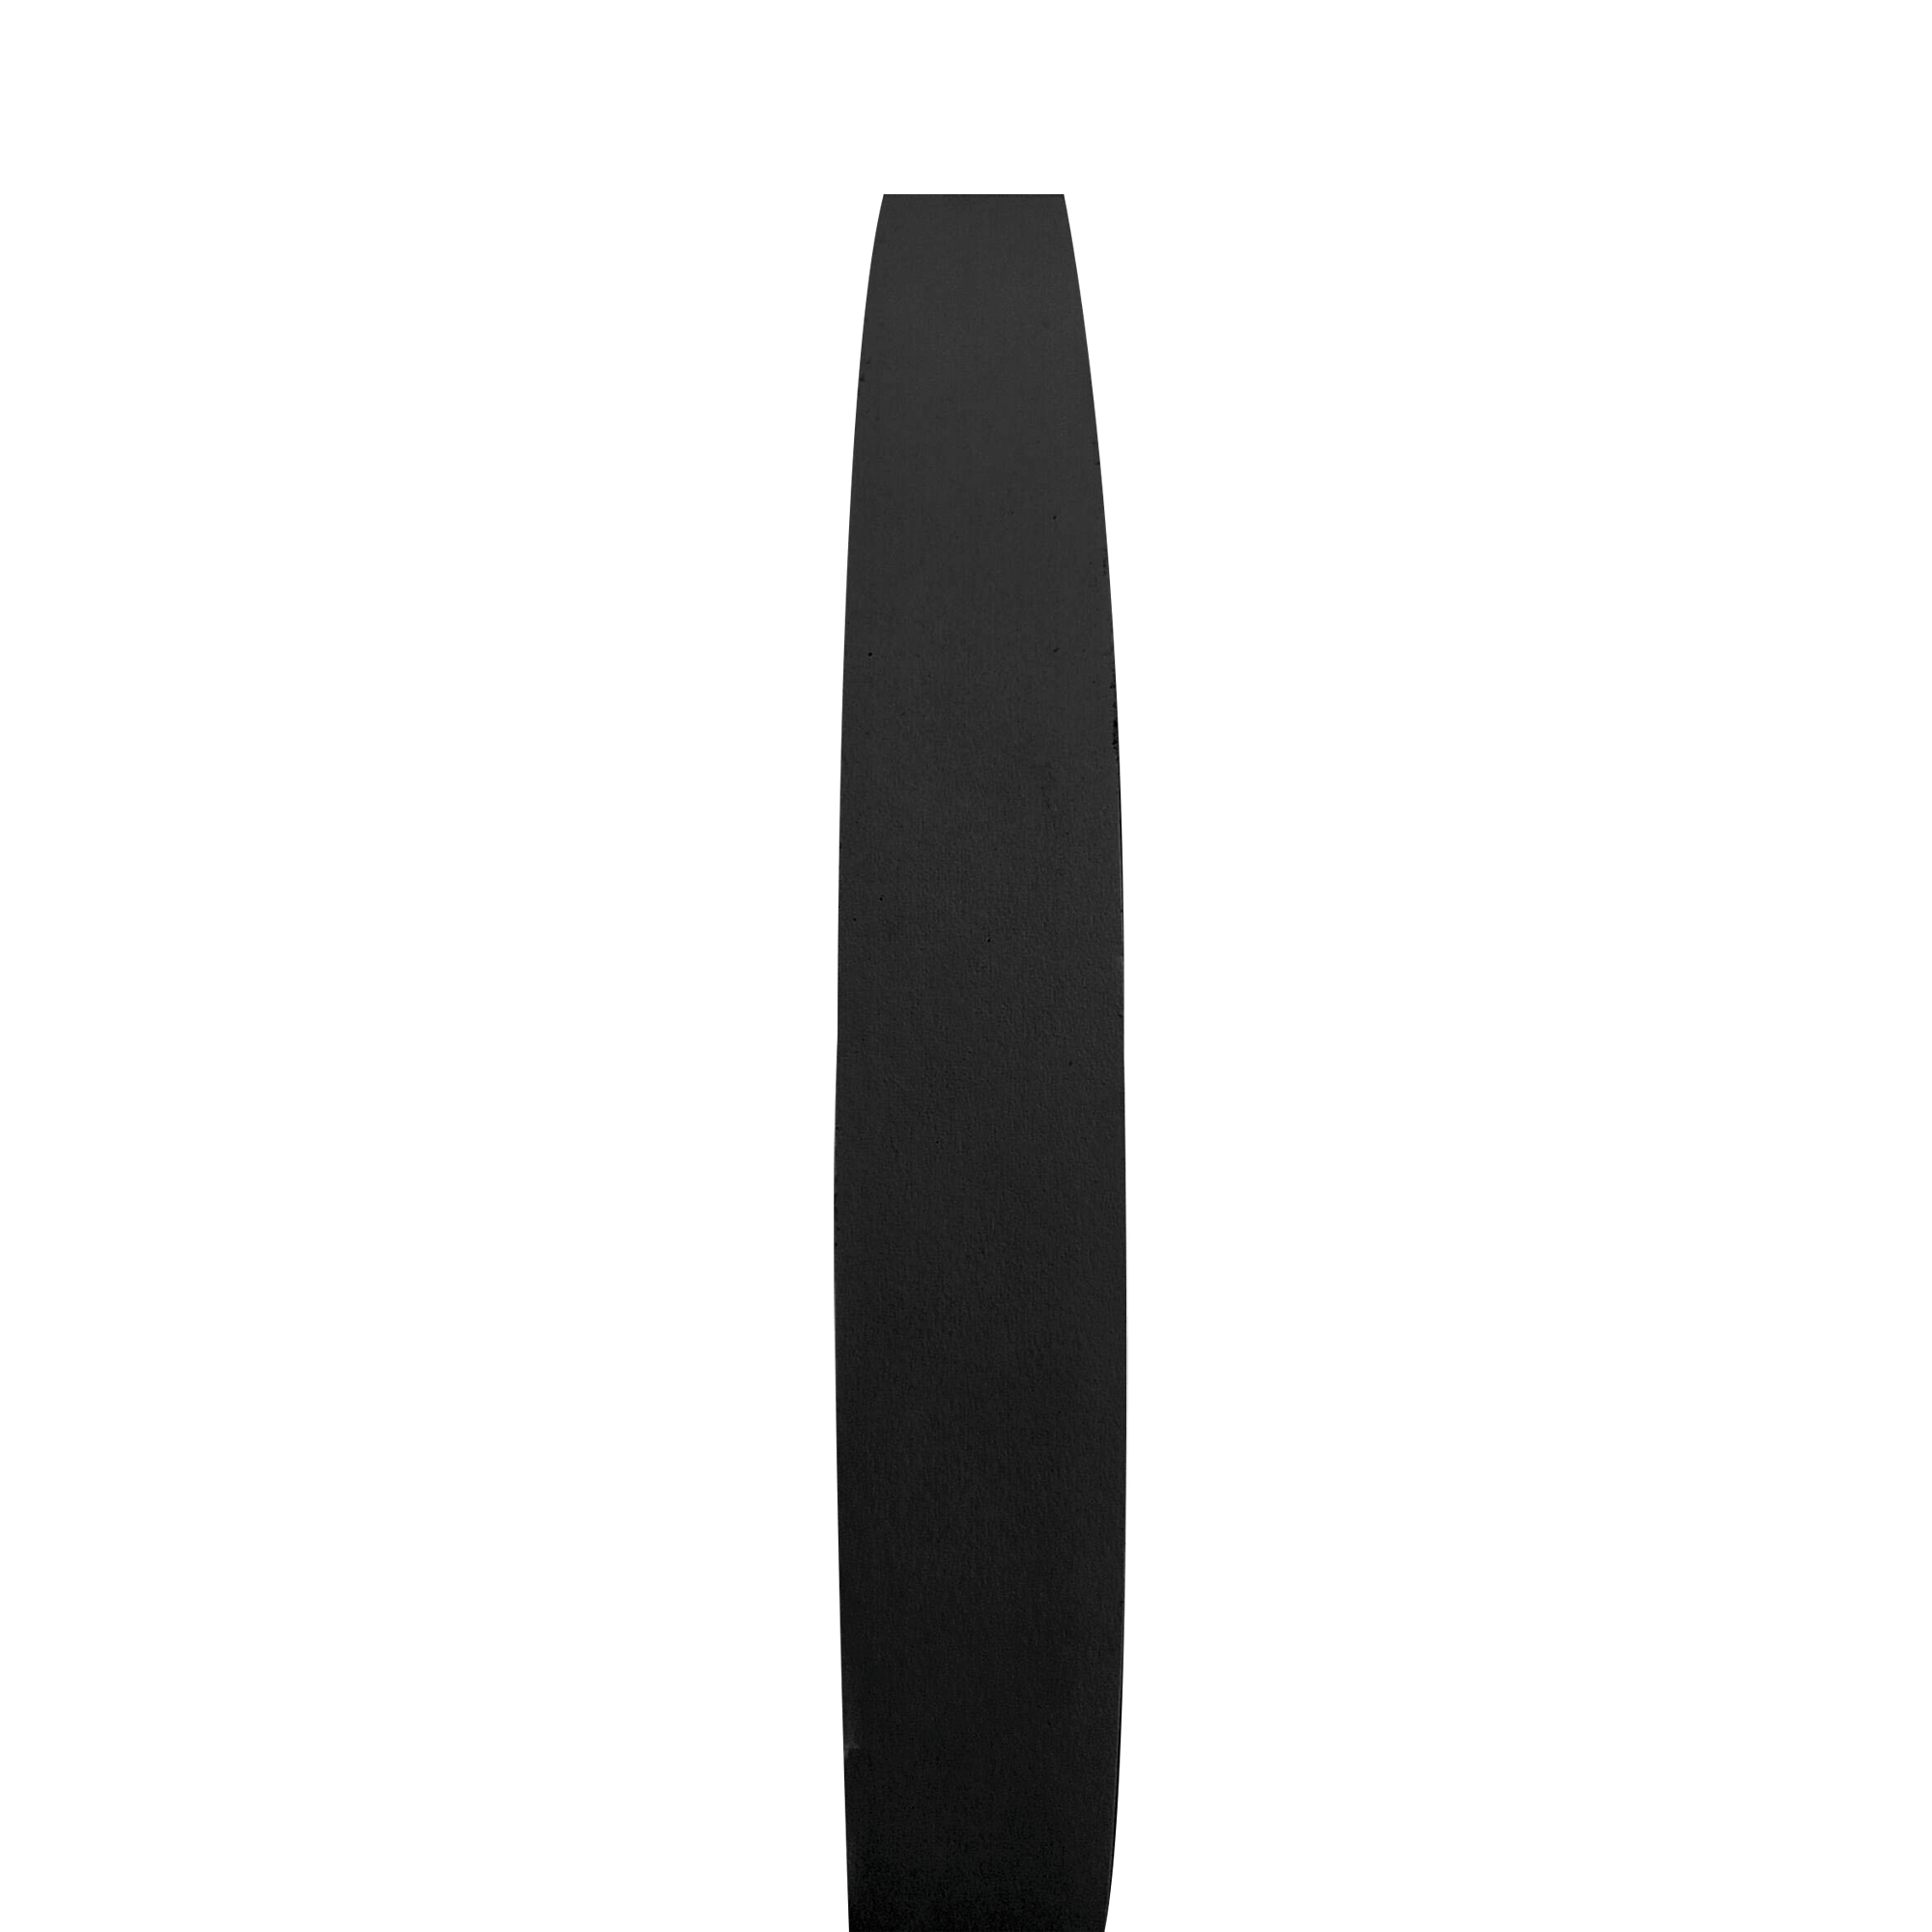 Showgear Hook and Loop Tape - Hook Side Schwarz - 20 mm x 25 m - selbstklebend